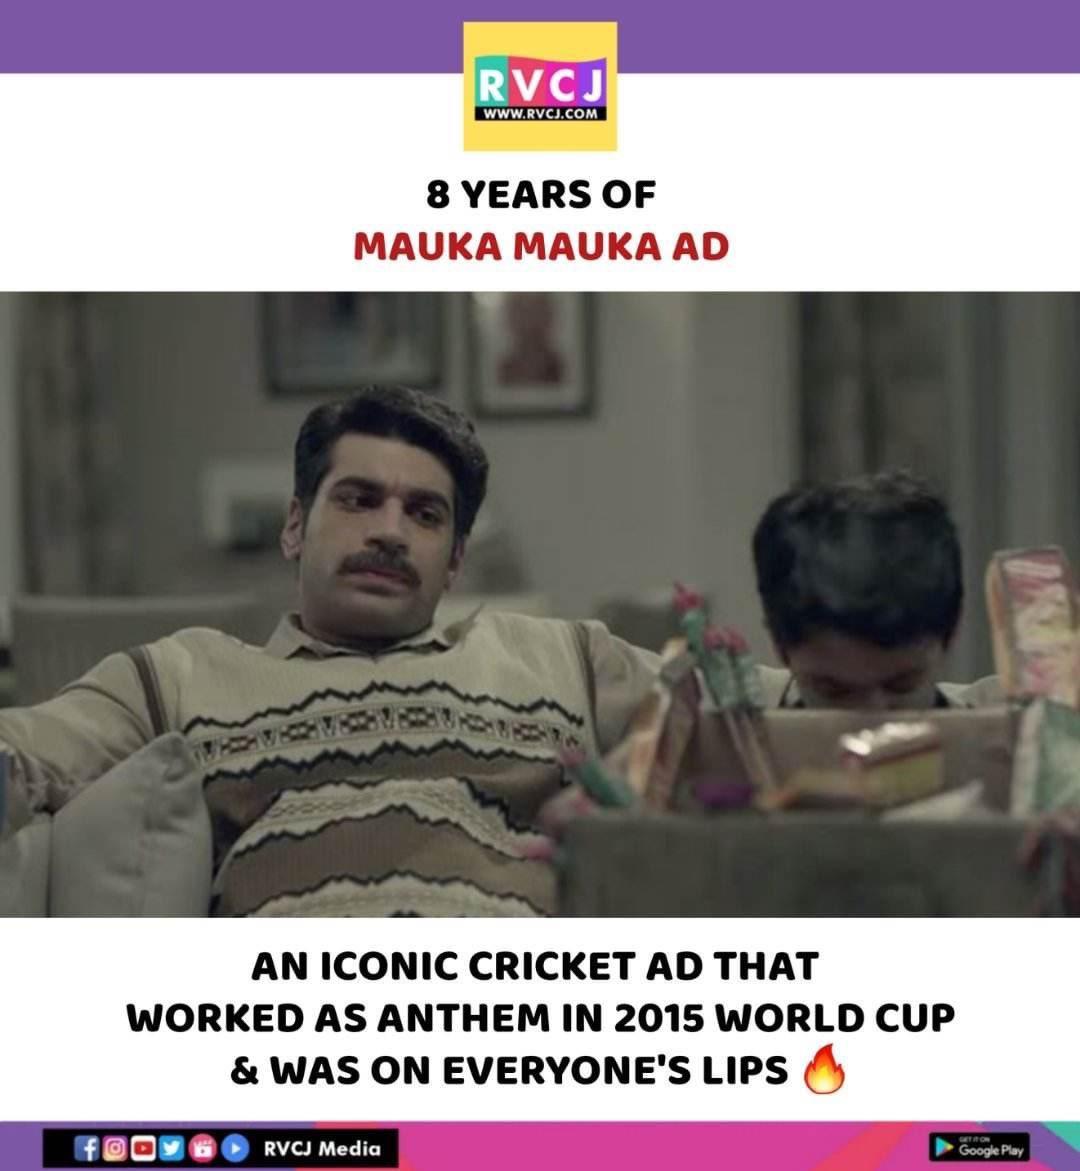 Iconic Ad!
#maukamauka #2015worldcup #ad #rvcjmovies